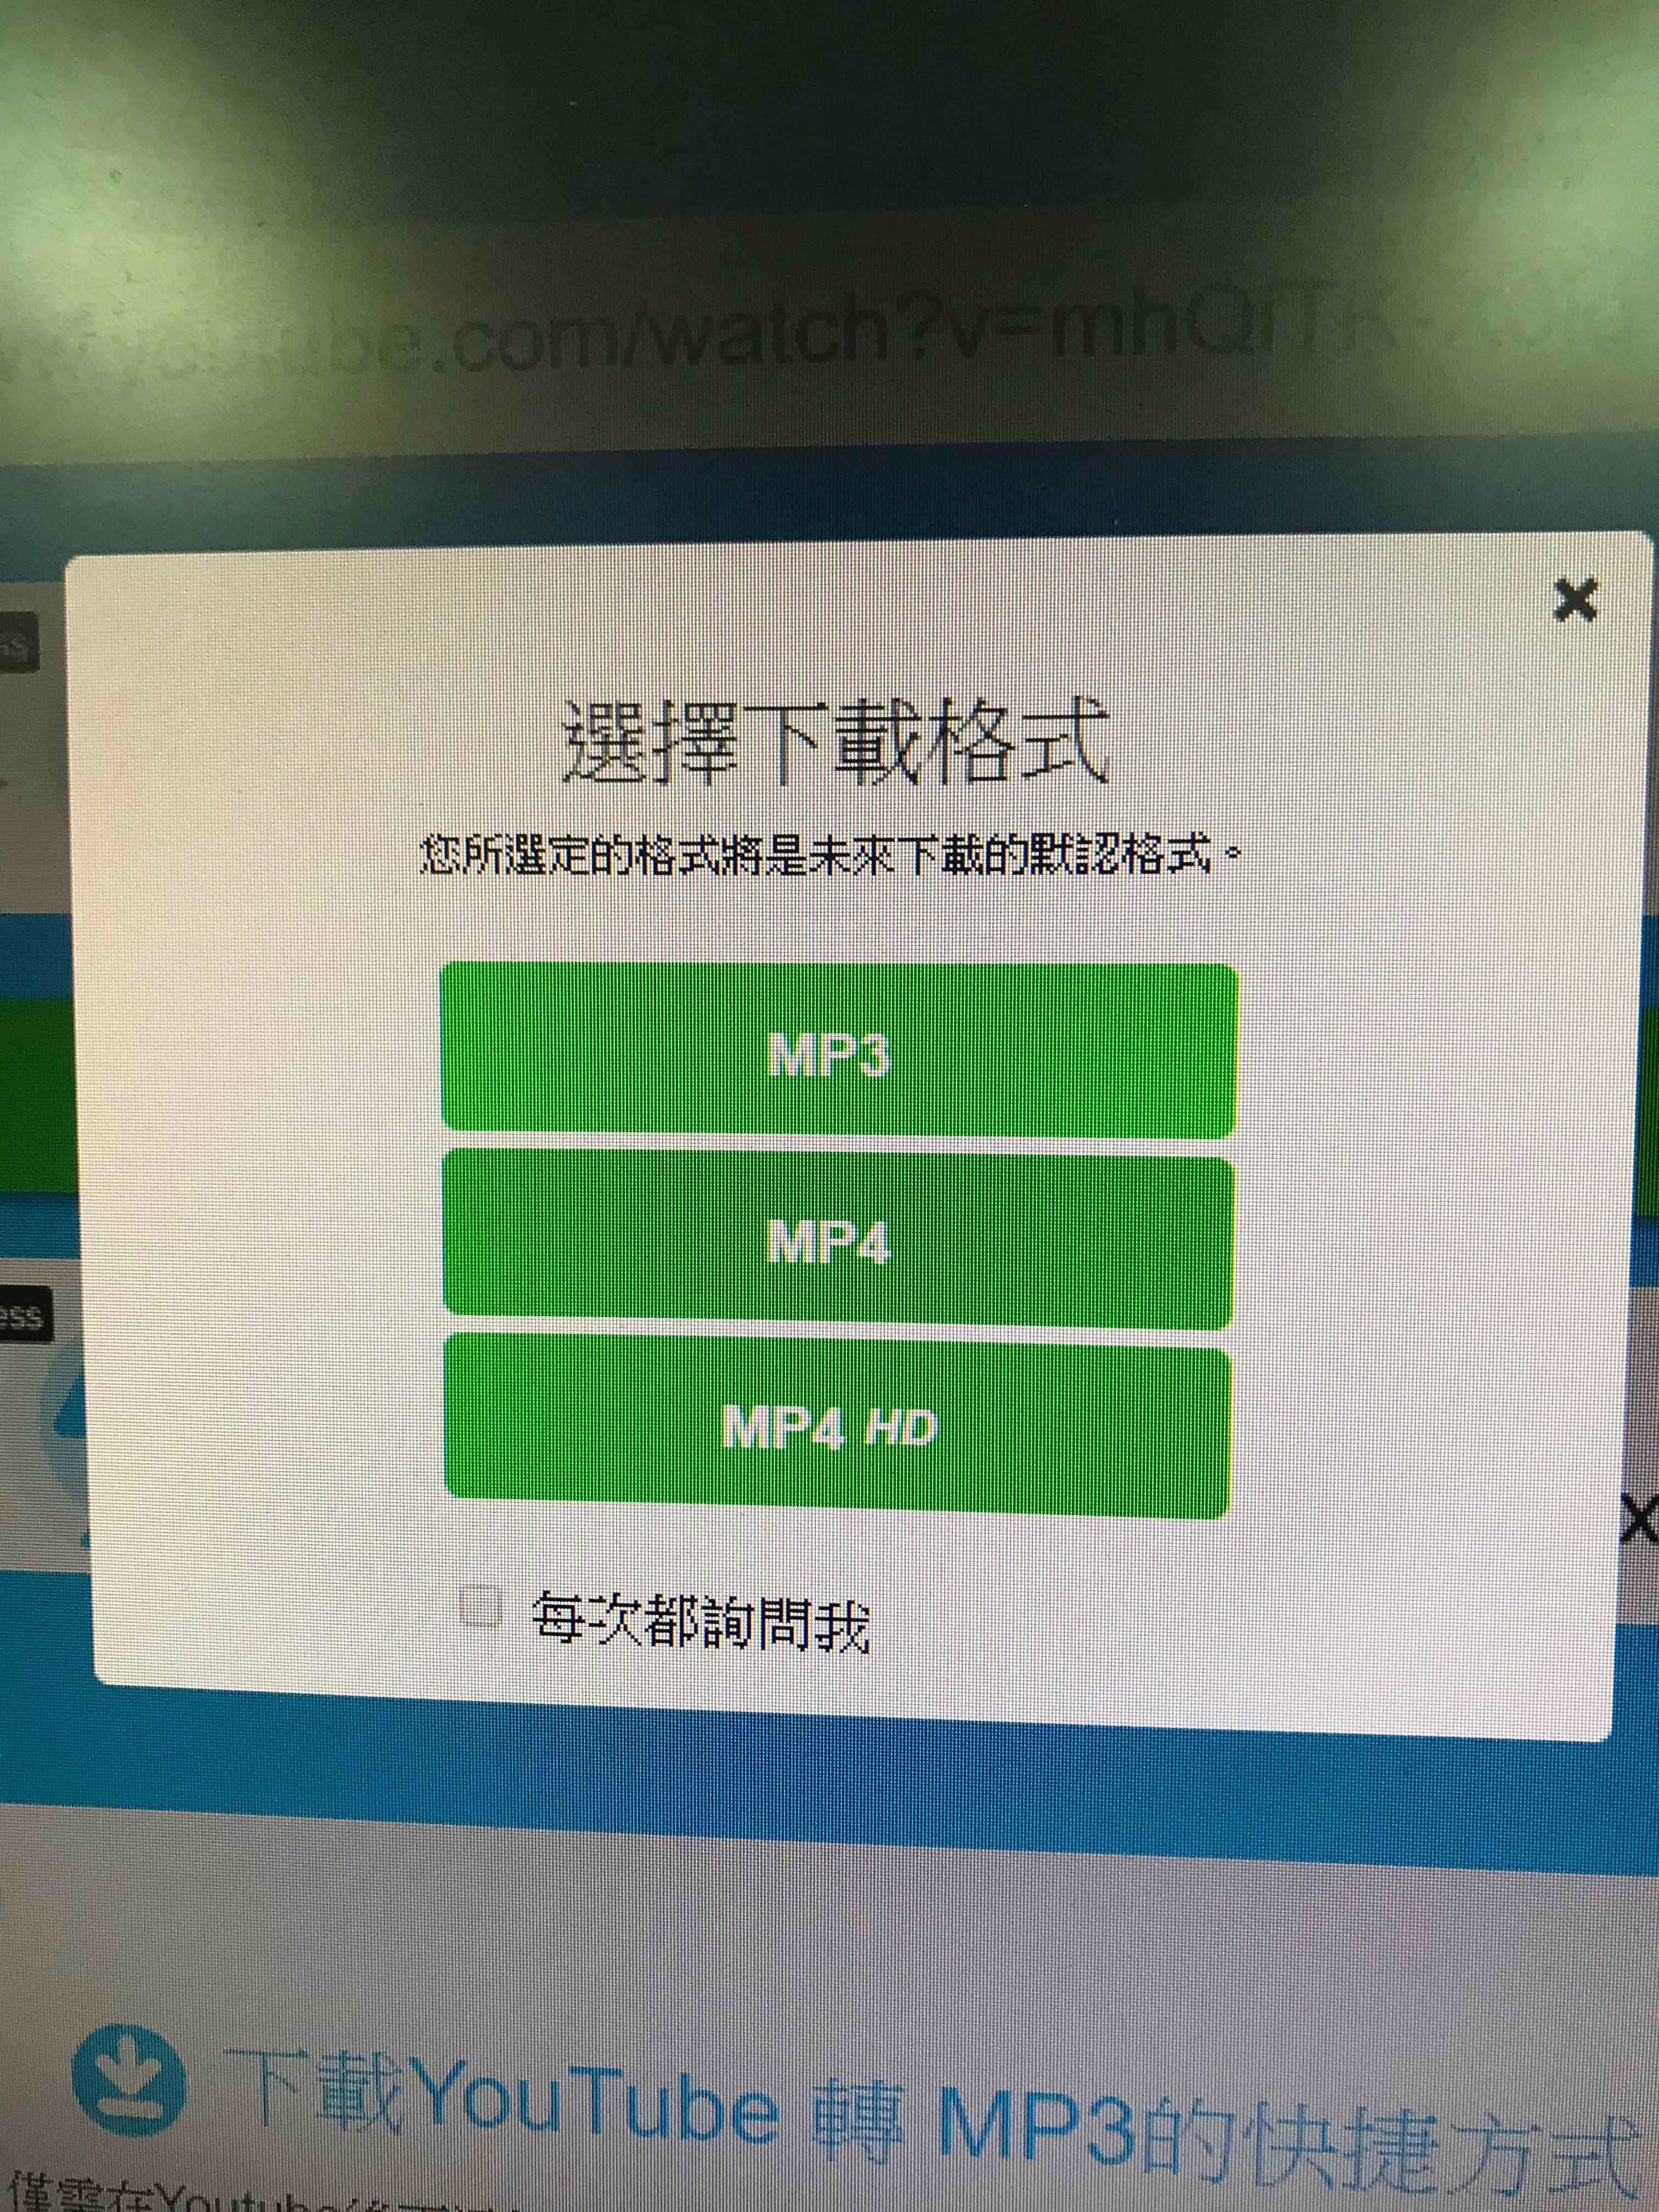 第一次使用才會出現的詢問畫面，此步驟請明眼者協助點選「MP3」，以後再操作時就會以此次選擇的格式進行轉檔並下載。